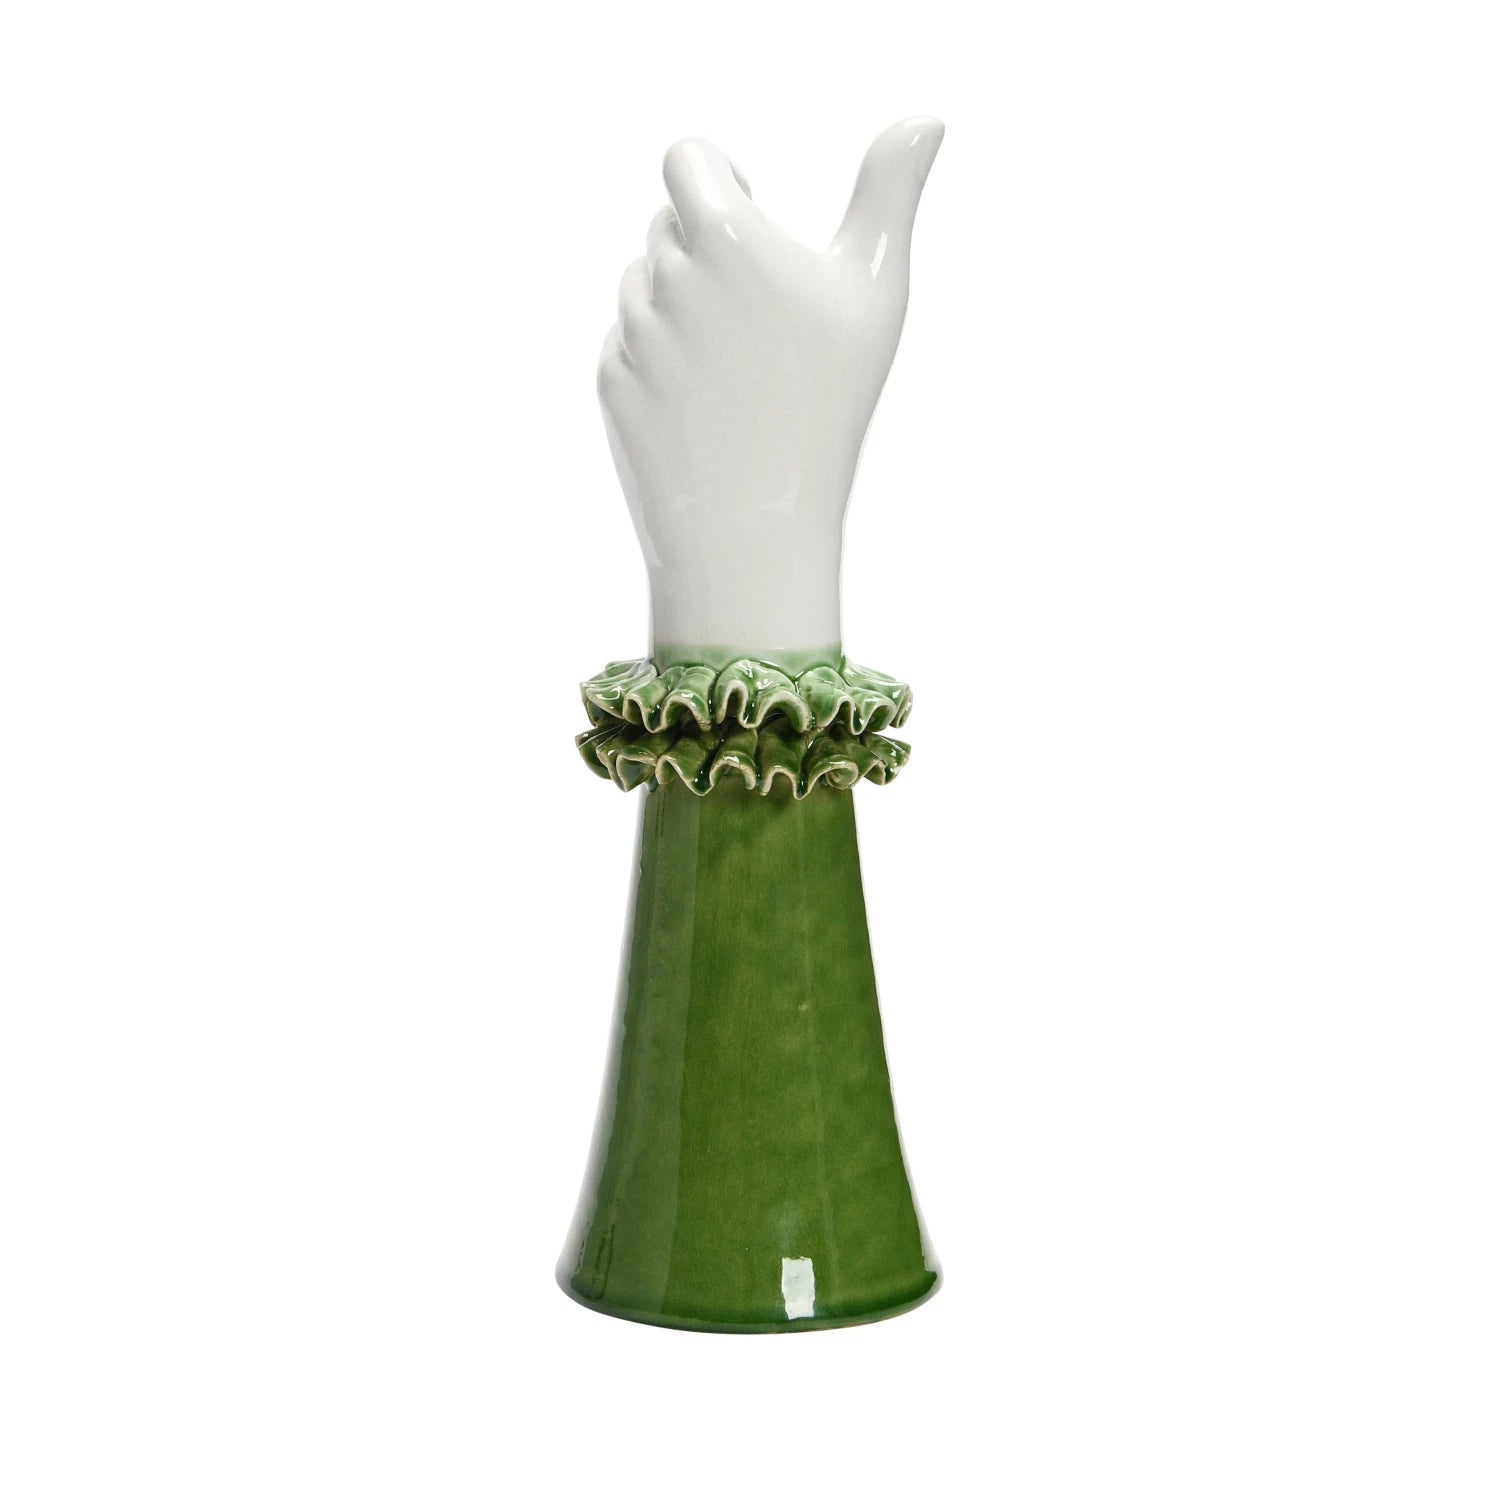 Stoneware Hand Shaped Vase with Ruffled Shirt Sleeve